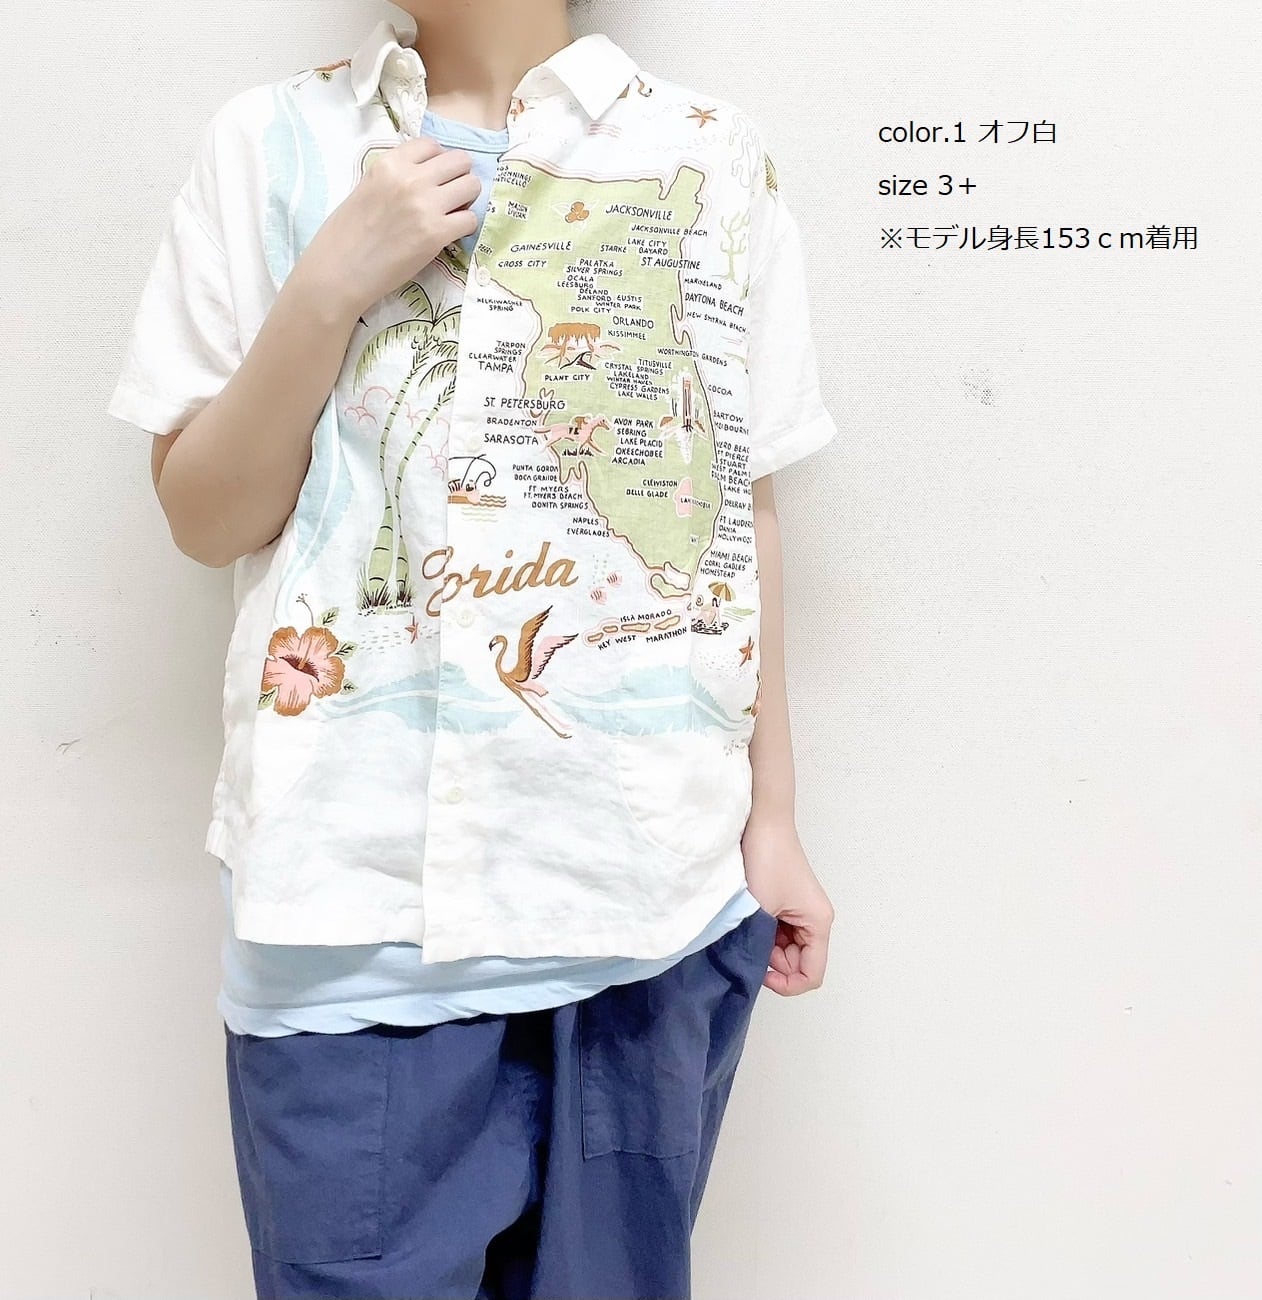 快晴堂】Wide カロハシャツ / 32S-41G | syozikiya online shop